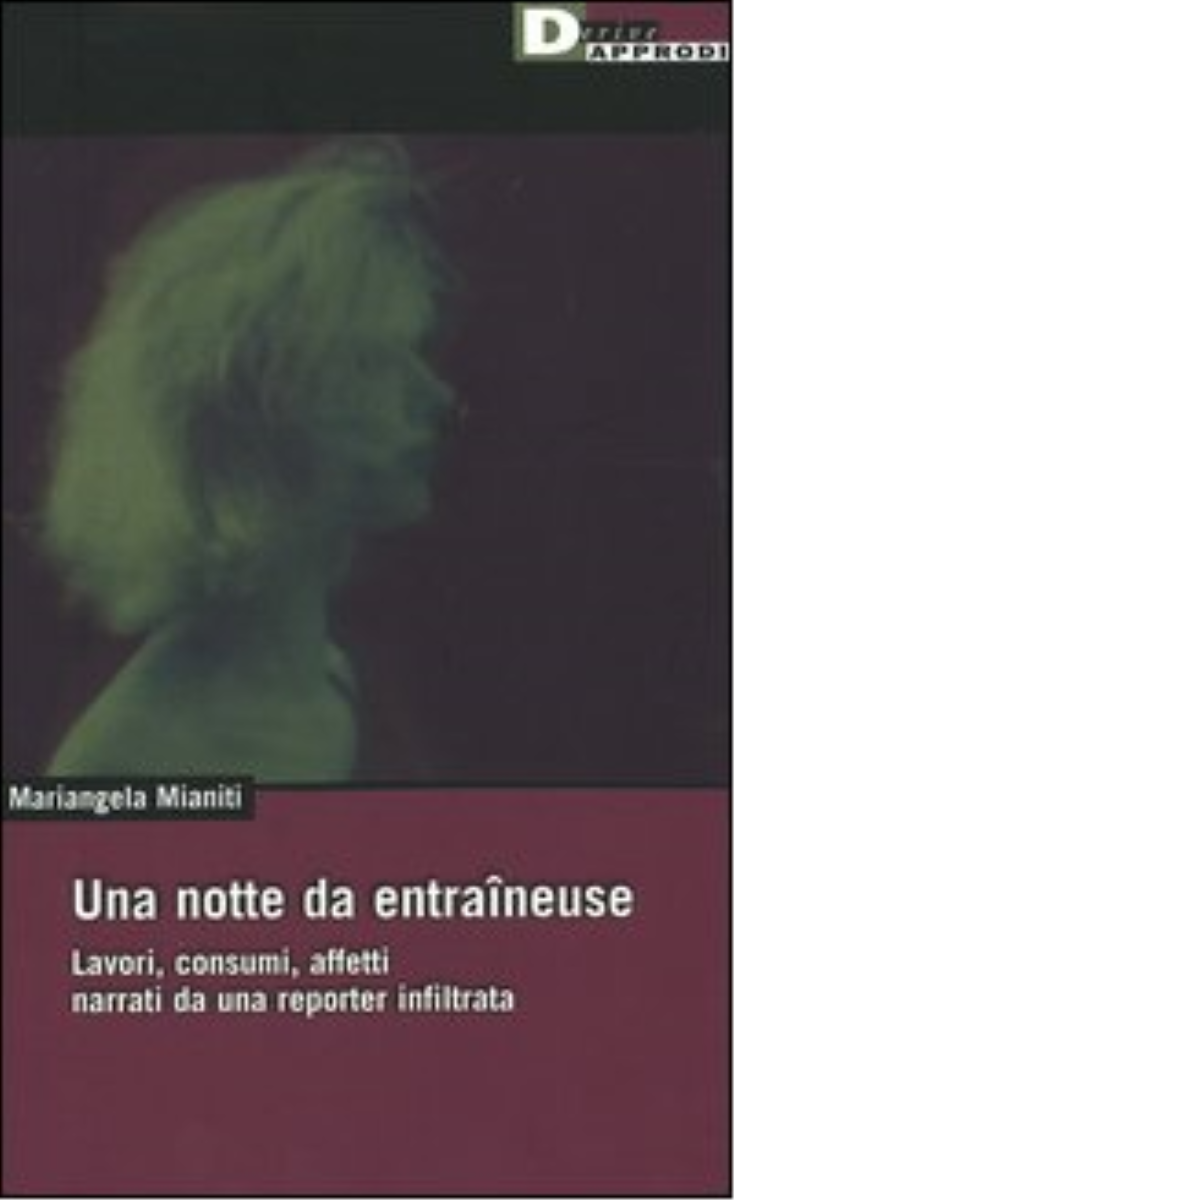 UNA NOTTE DA ENTRAINEUSE. di MARIANGELA MIANITI - DeriveApprodi,2005